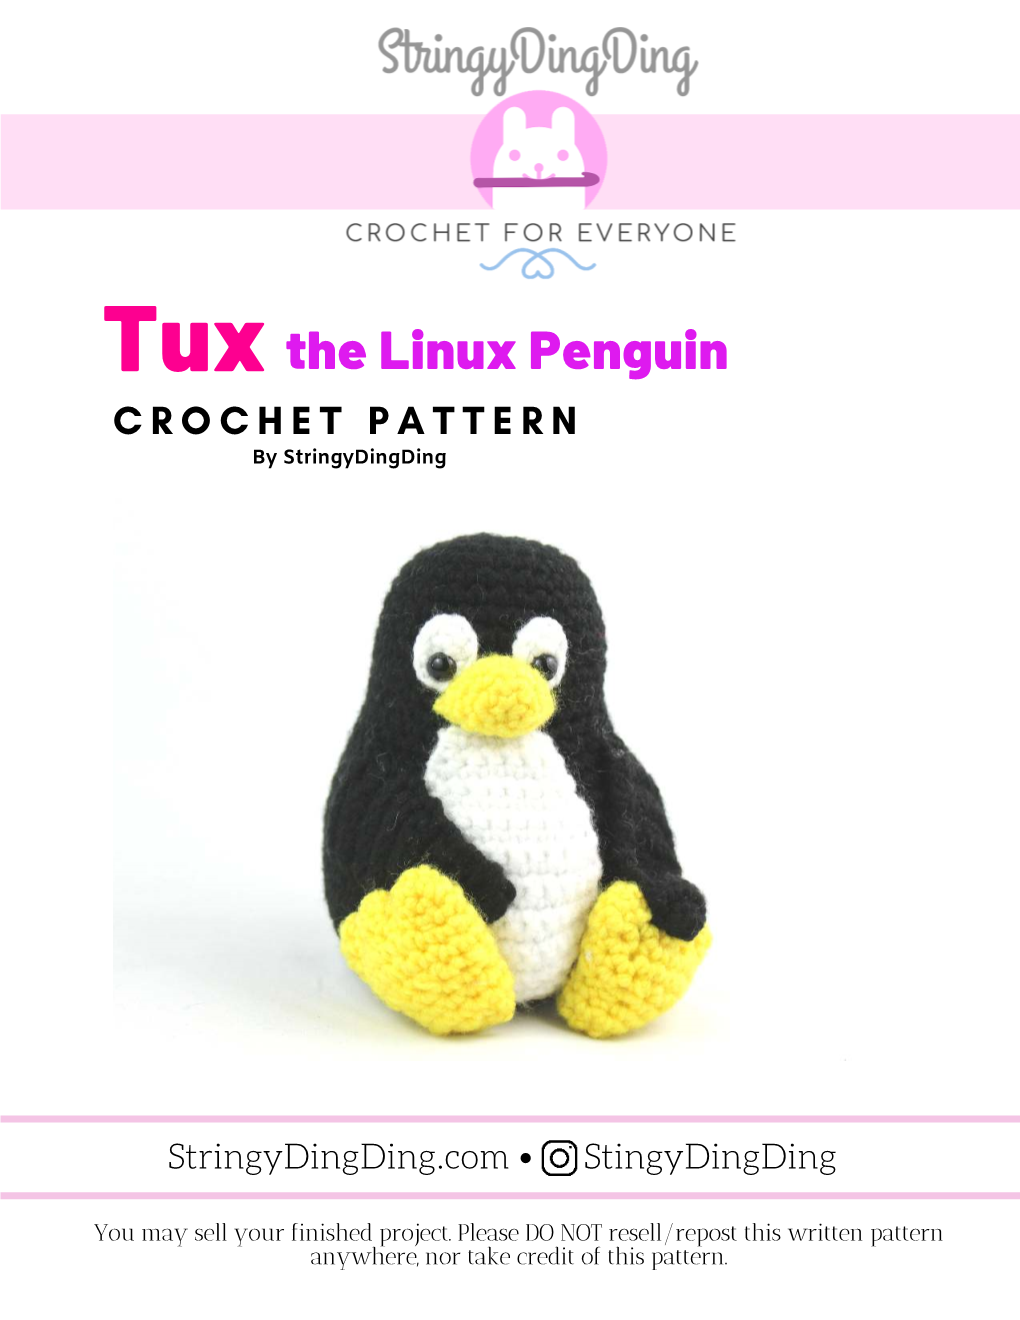 The Linux Penguin CROCHET PATTERN by Stringydingding